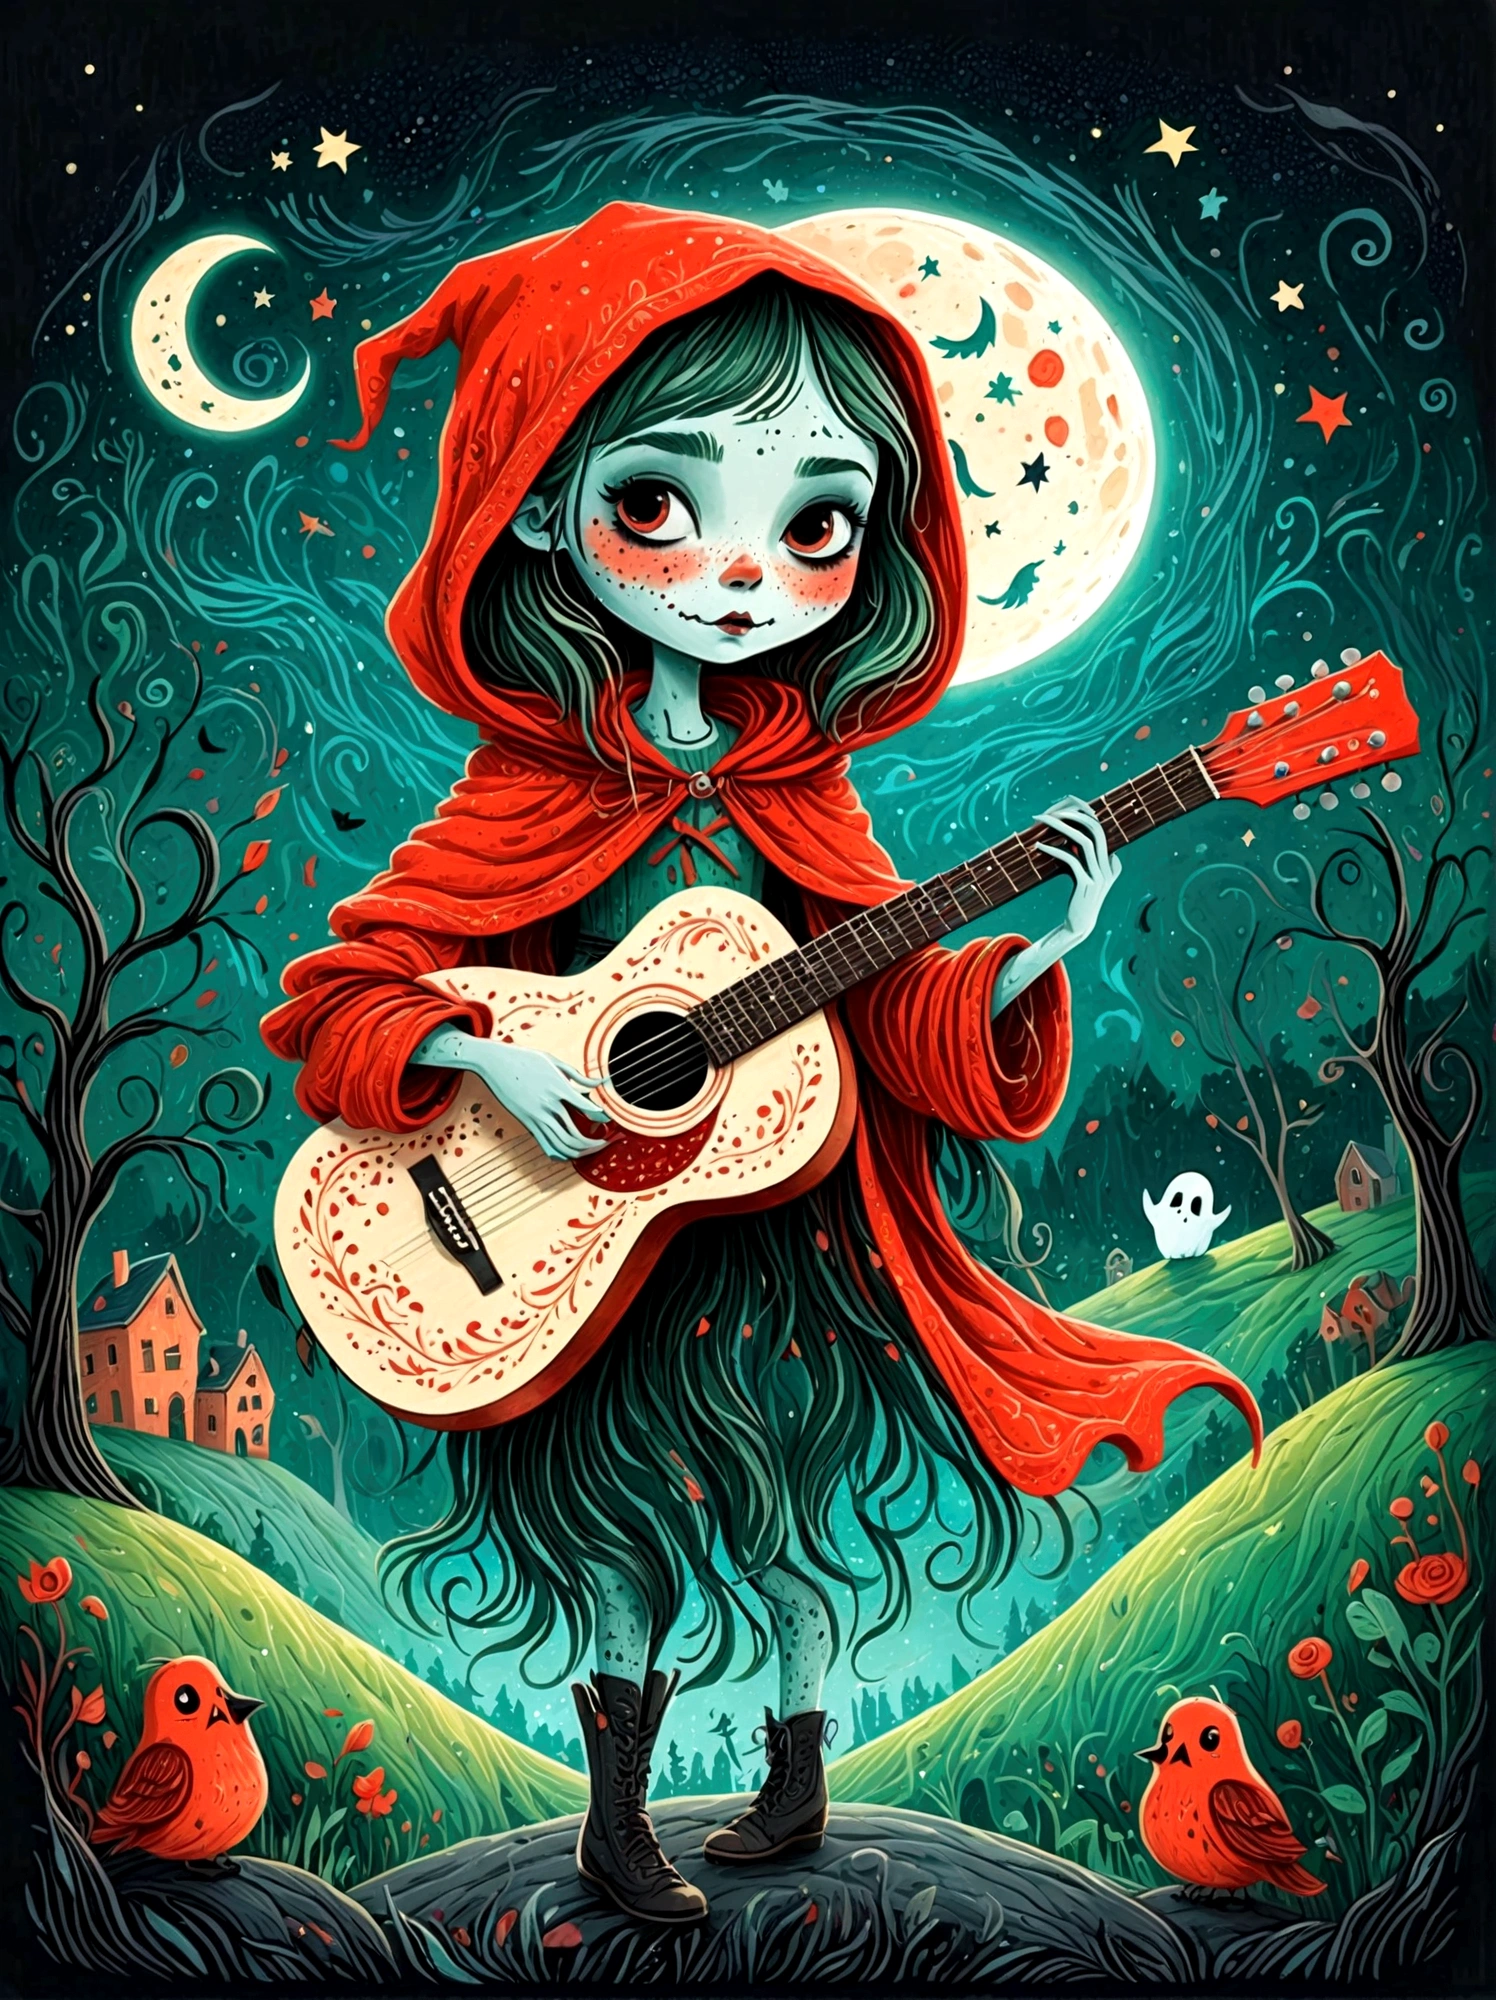 卡通手绘, 1個女孩, 獨自的, 可爱年轻迷人的小红帽女孩，浓浓僵尸妆, 弹奏一把旧吉他，吉他手，(幽灵人群)，幽灵观察者，(演唱會現場:1.5)，繁星點點的夜晚，陰沉有霧的氣氛，可爱的荒谬，非凡外表的吸引与拒绝，神奇的天真藝術，明亮的蓝色和绿色，调色板是红色, 橙色和黑色的色调，具有粗略的风格, 背景应该有简单的手绘涂鸦图案, 1shxx1